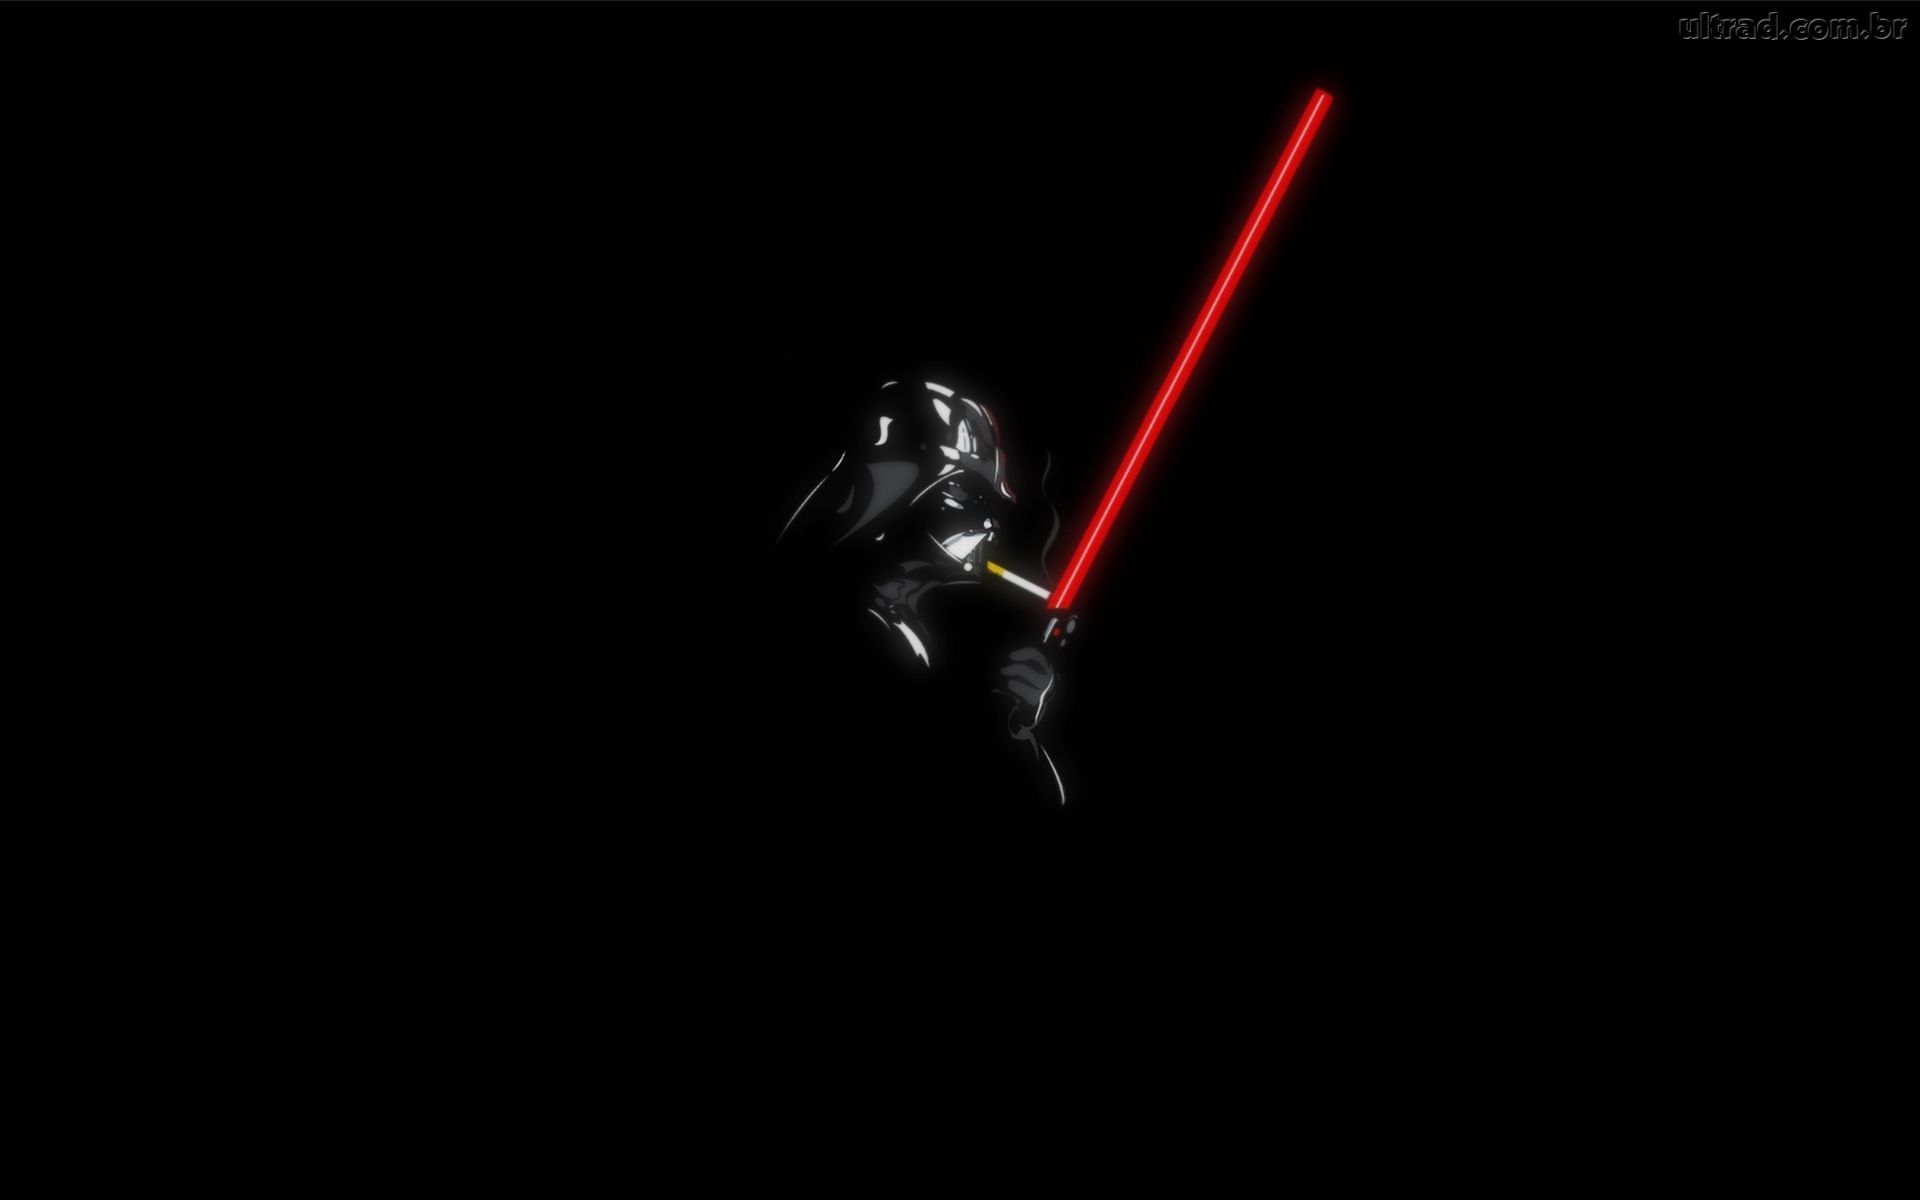 Darth Vader Wallpaper 1080p Kootation